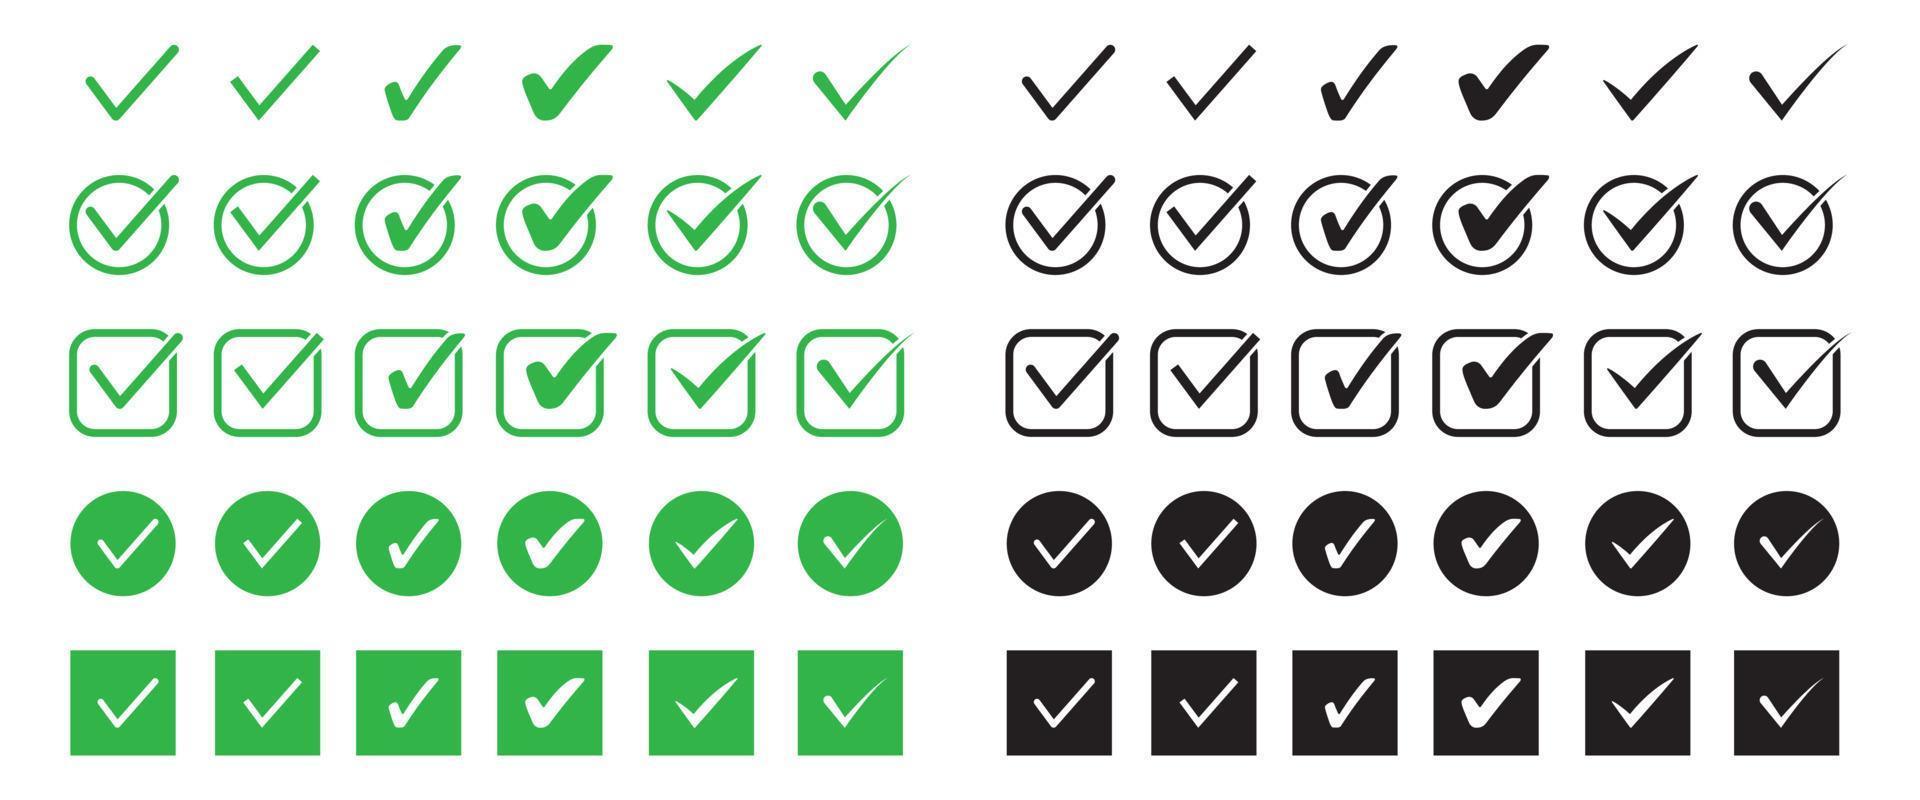 conjunto de icono plano de marca de verificación verde y negro. silueta de marca de verificación en varias formas. vector4x4 vector